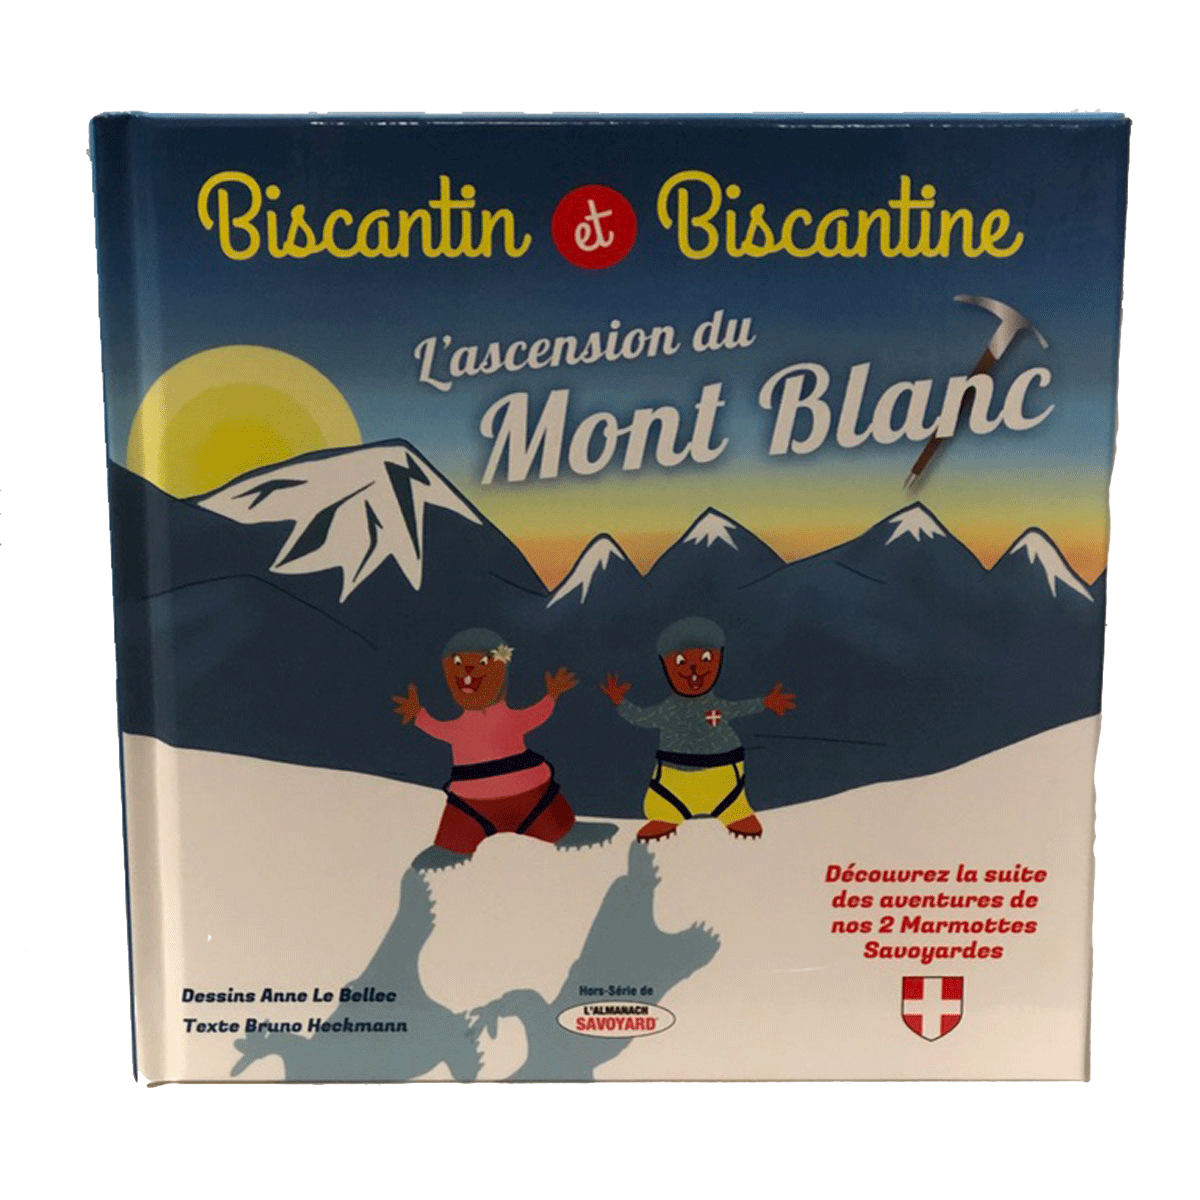 Biscantin Mont Blanc